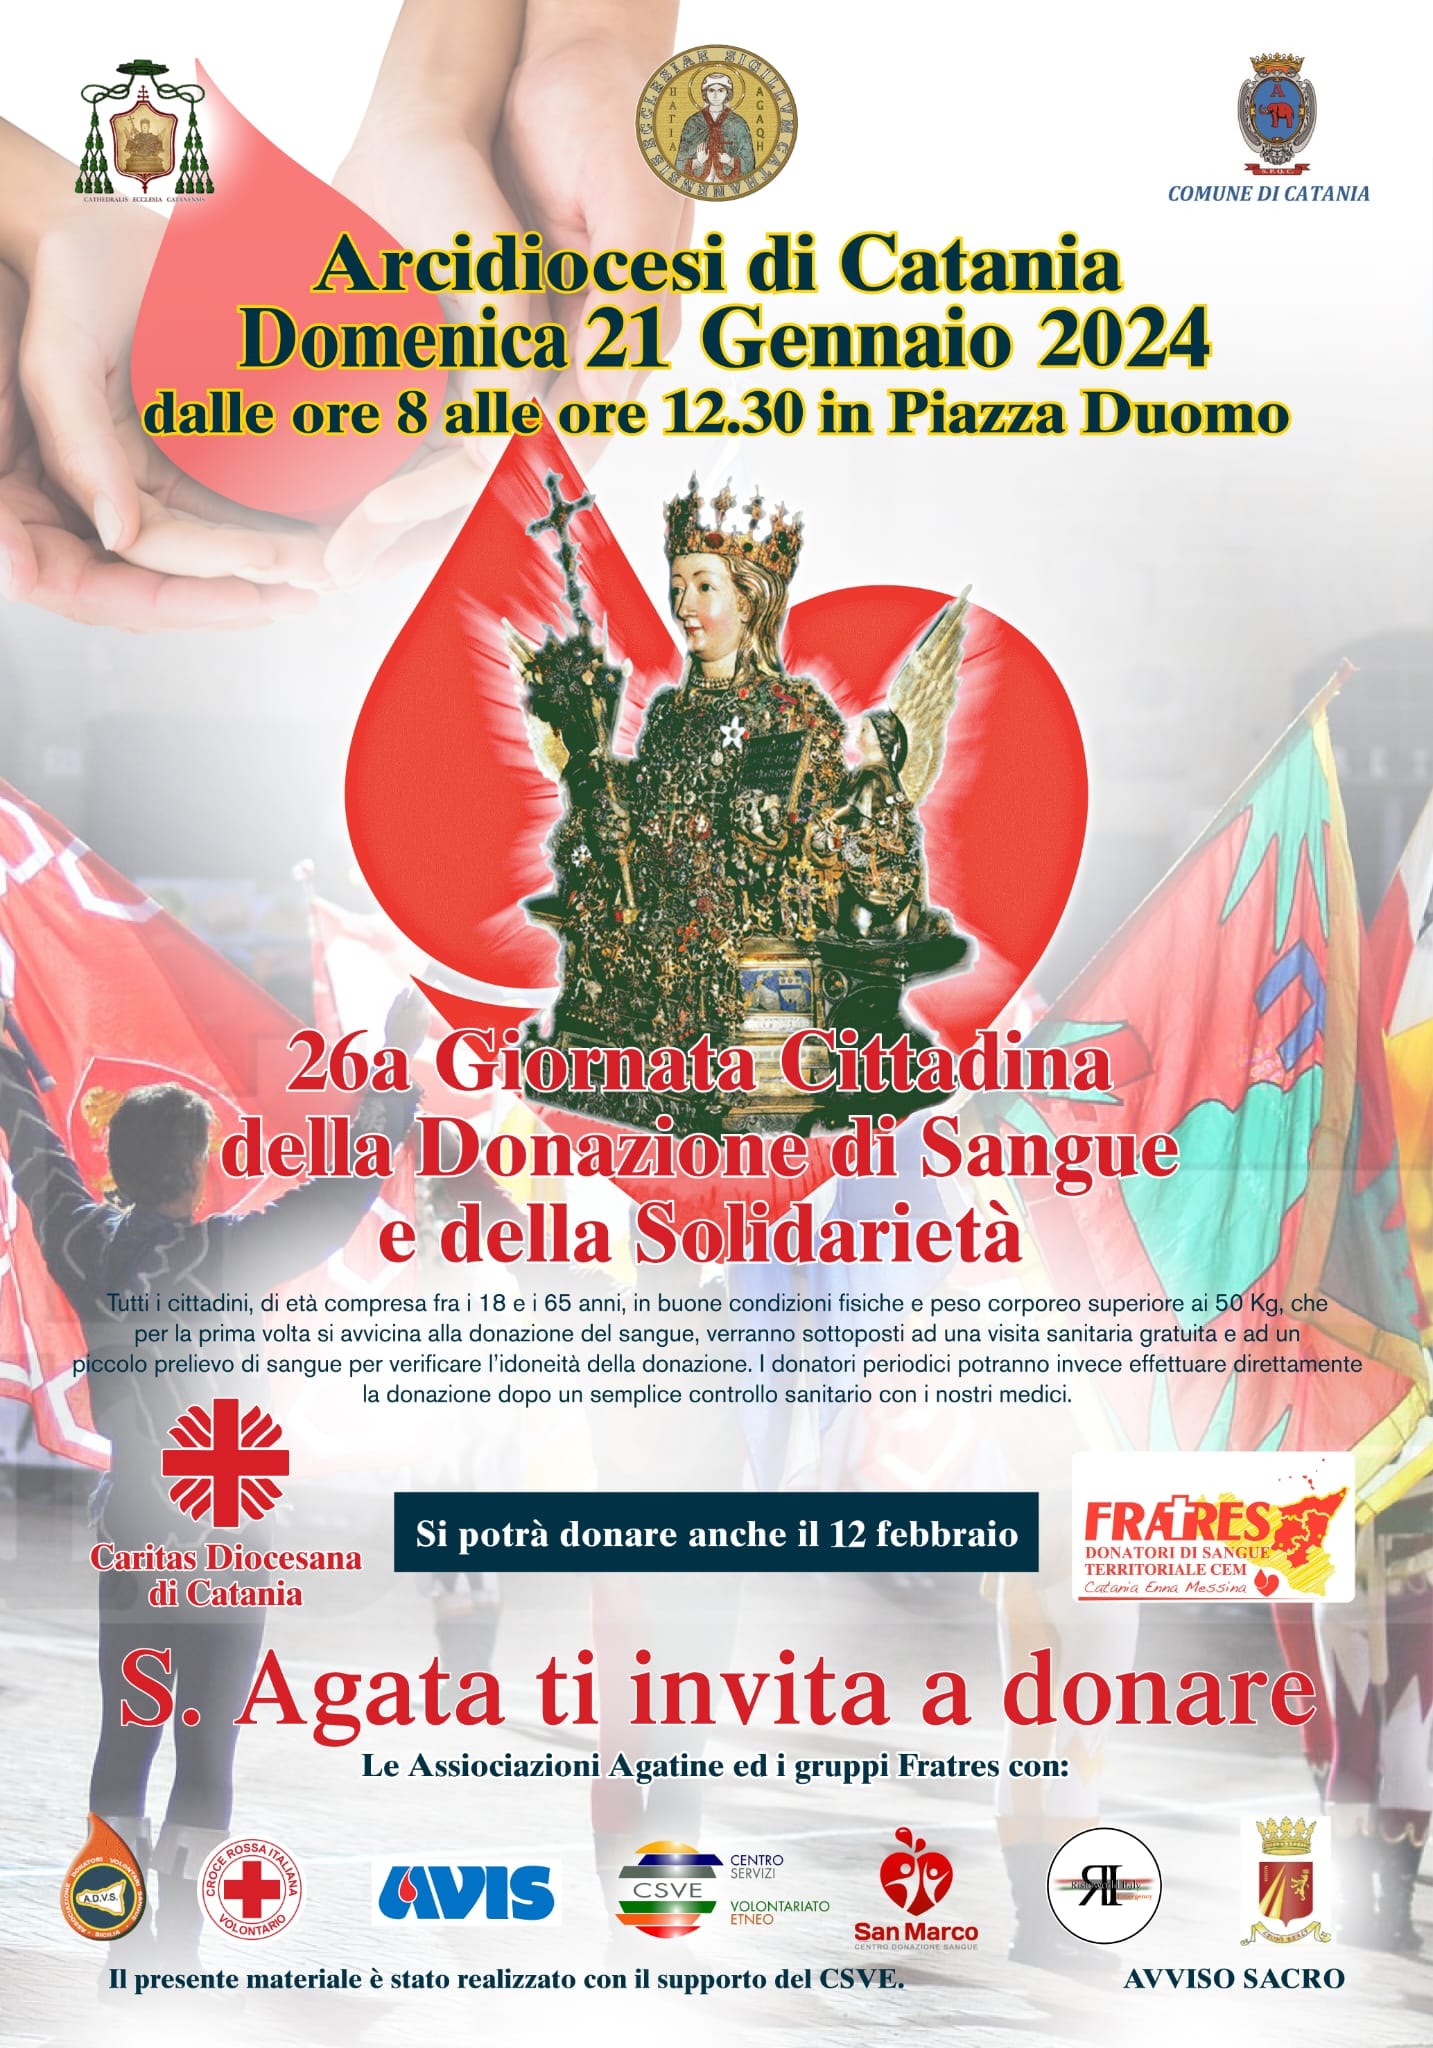 26a Giornata Cittadina della Donazione di Sangue e della Solidarietà